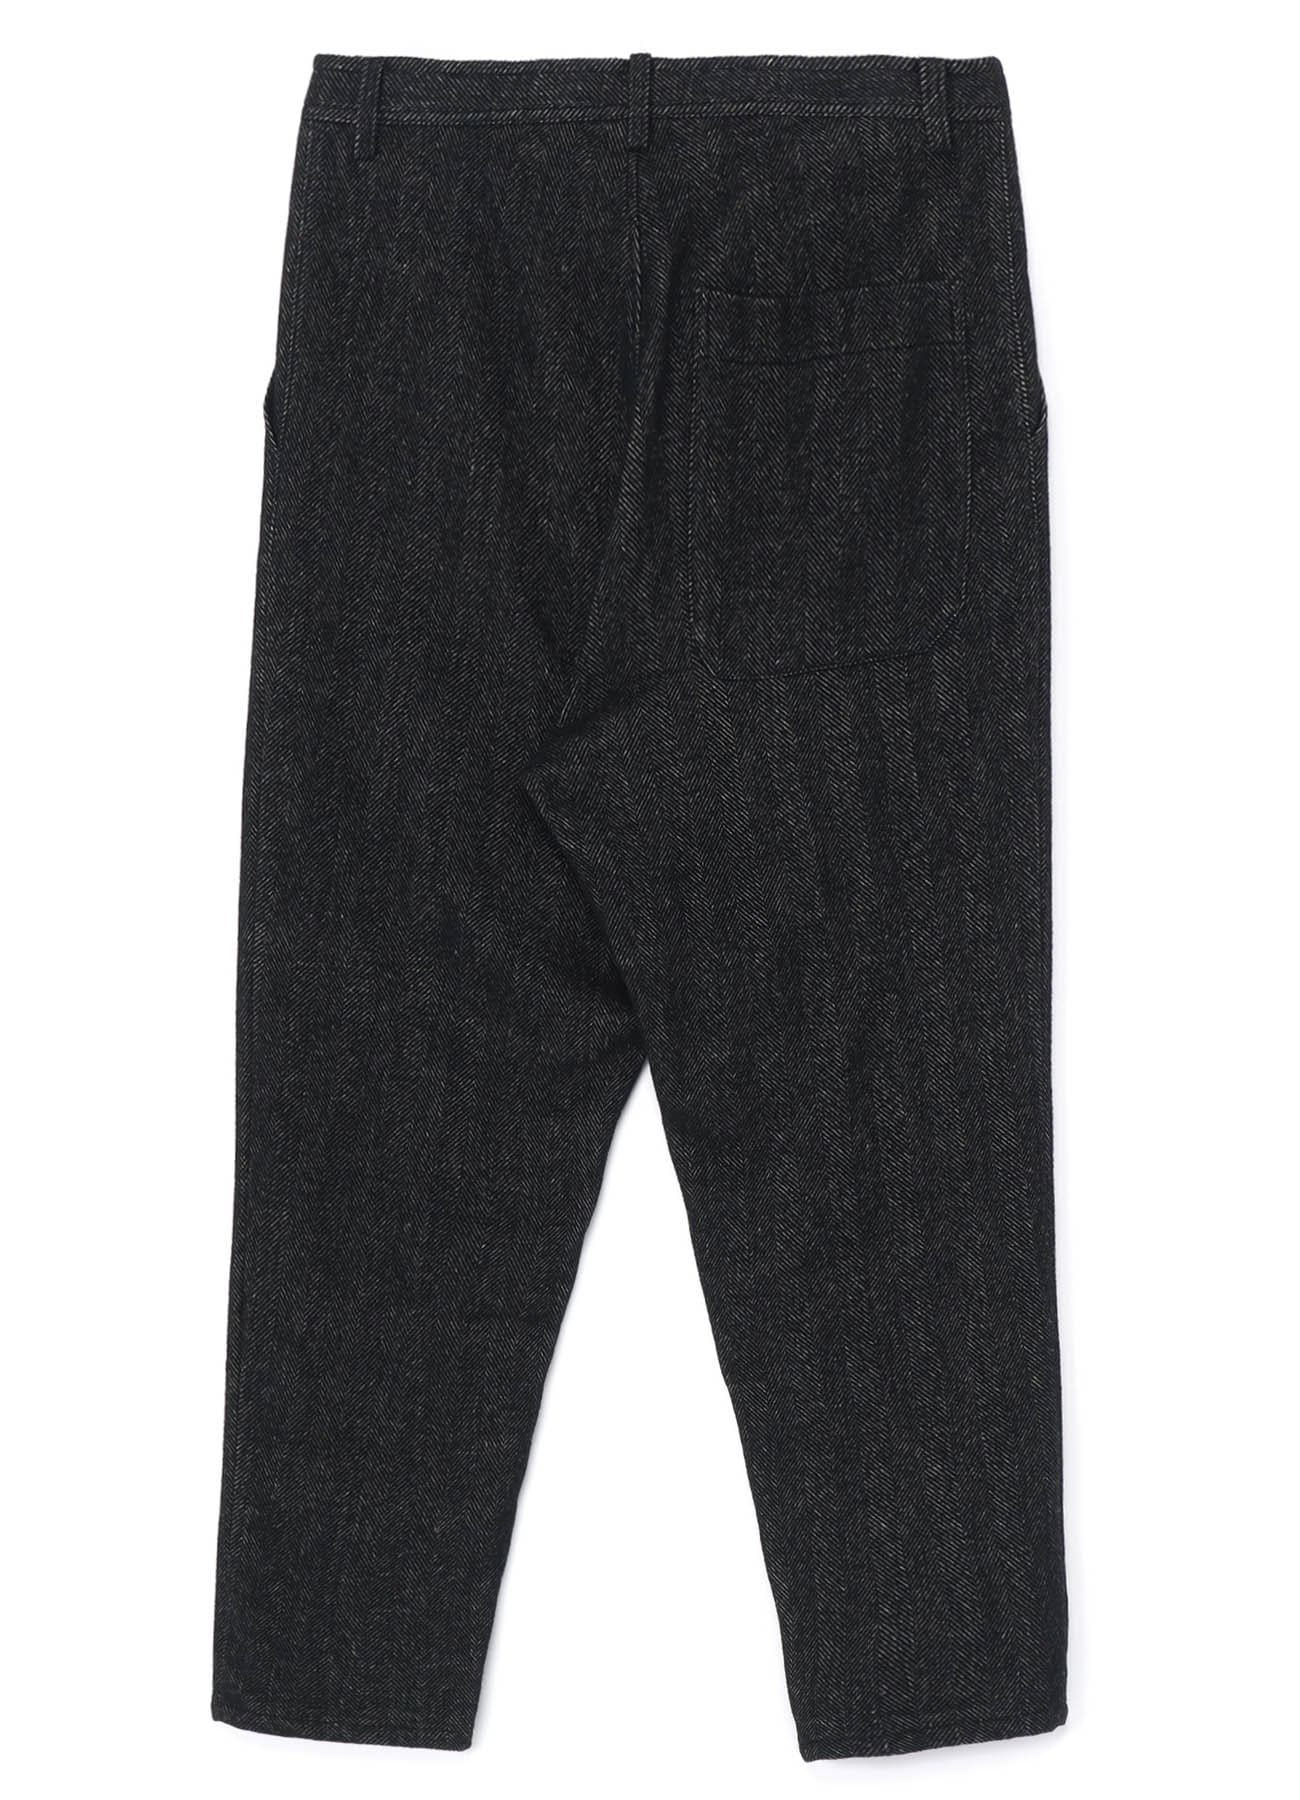 Black wool pants